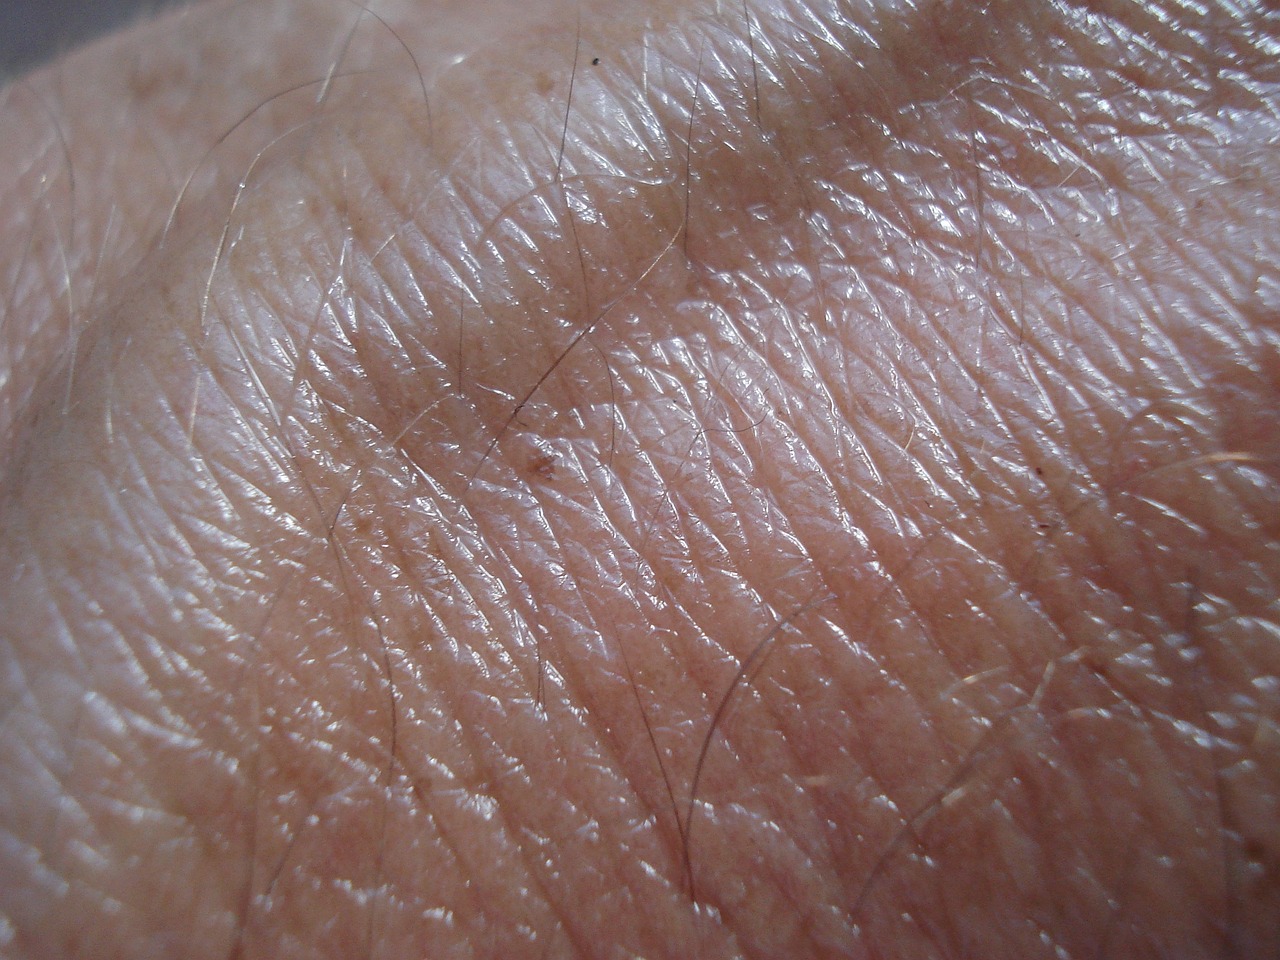 Skin close up